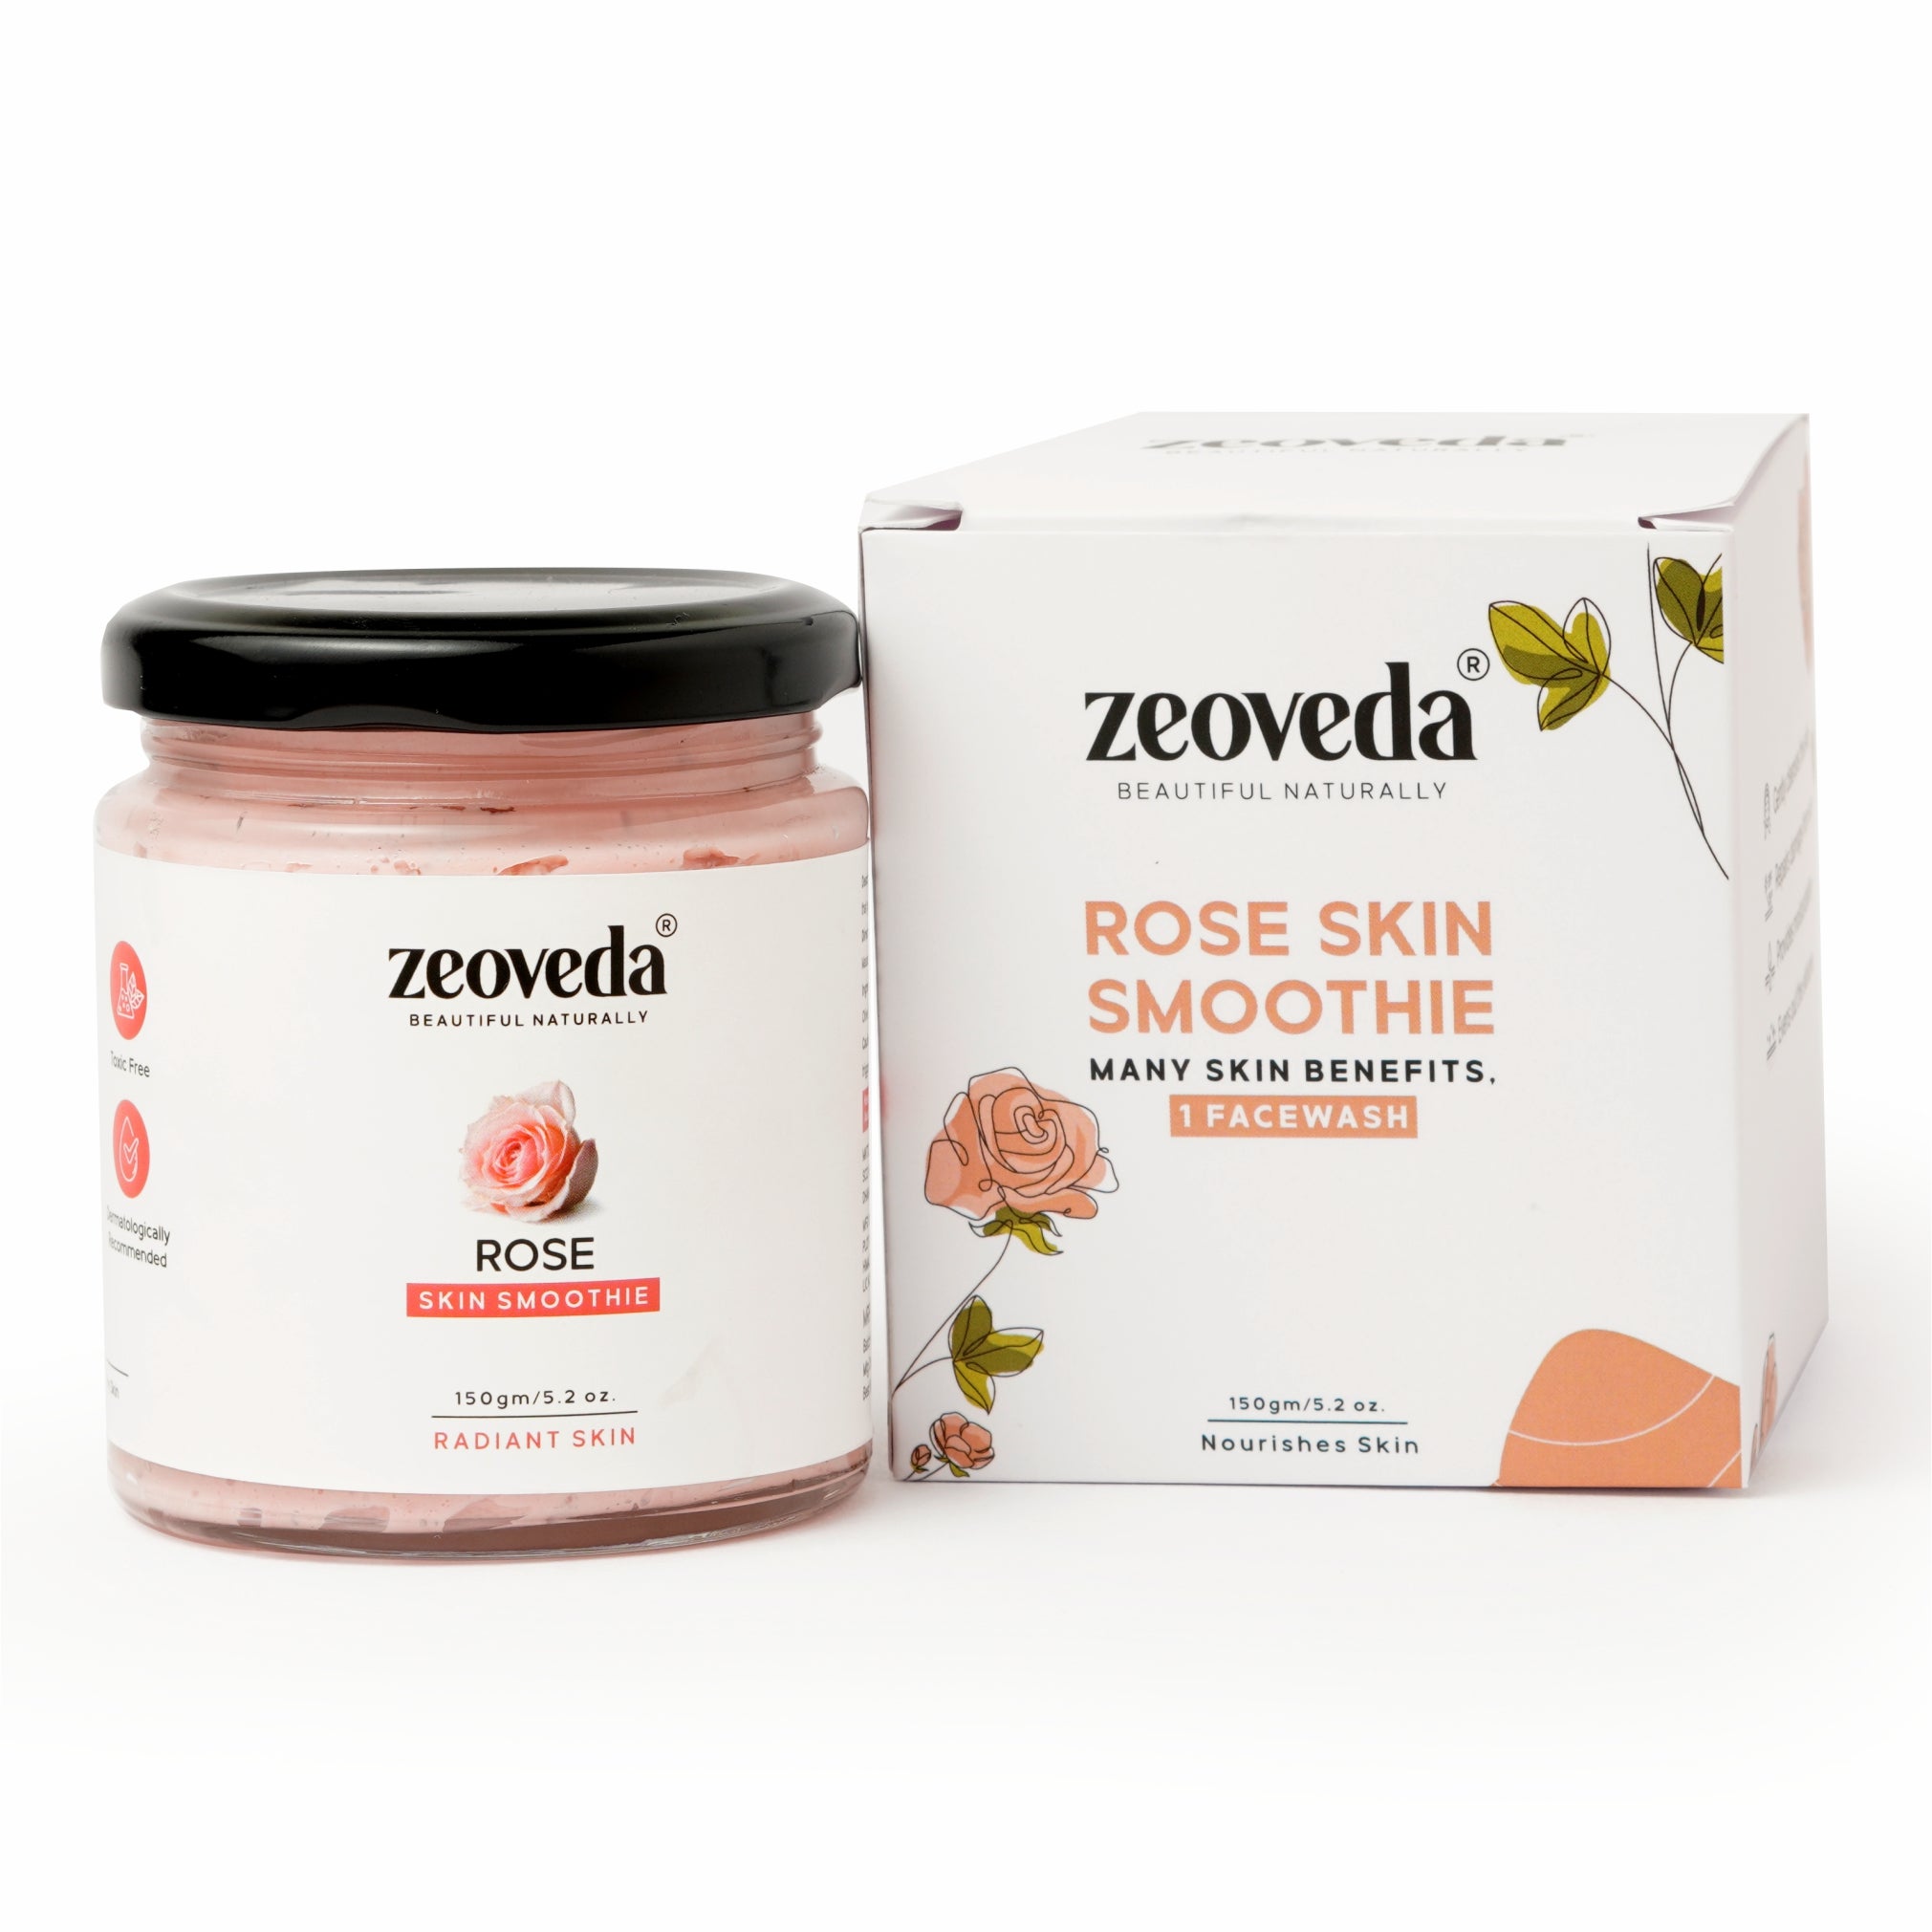 Rose Sugar Scrub(150GM) + Rose Skin Smoothie(100ML) Rose Combo For Blackheads & Clean Skin